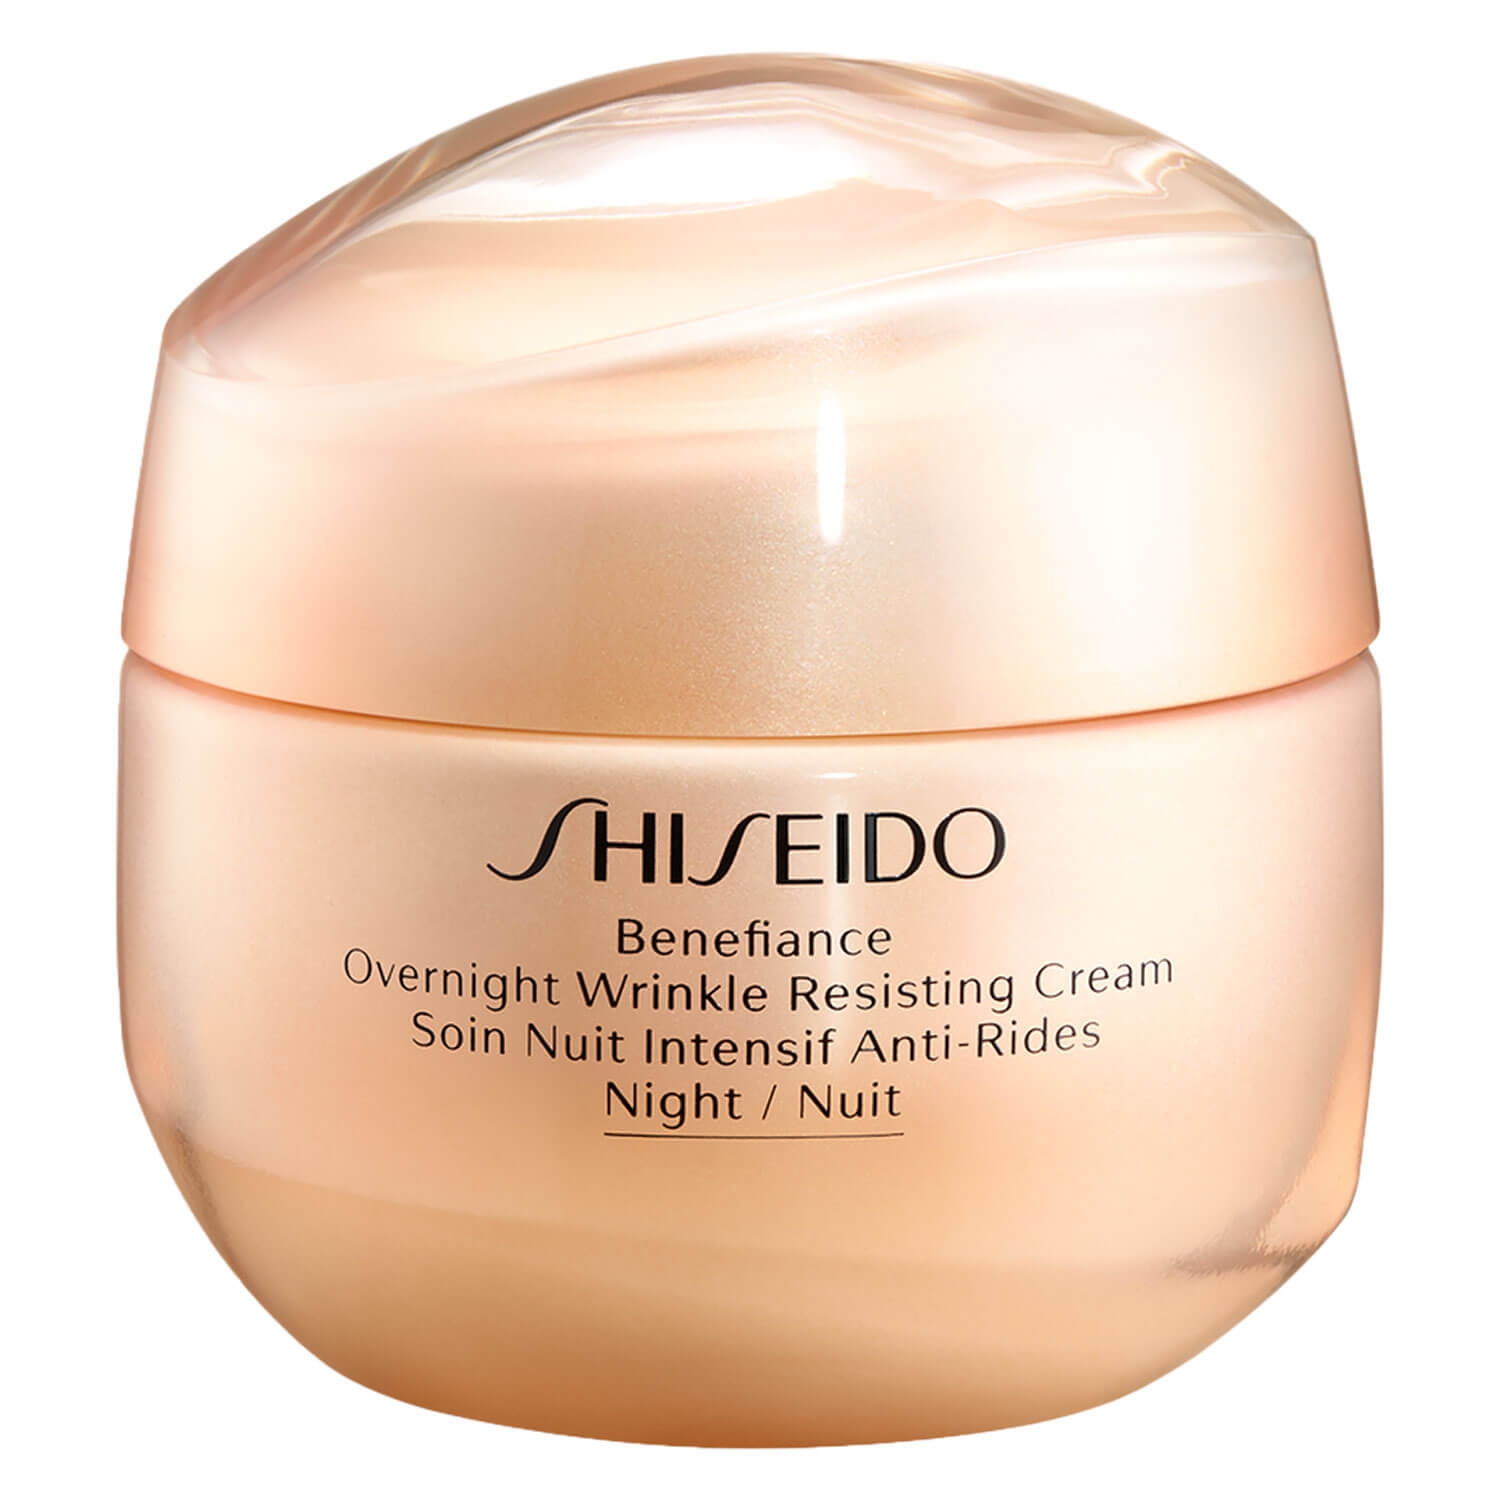 Produktbild von Benefiance -Overnight Wrinkle Resisting Cream